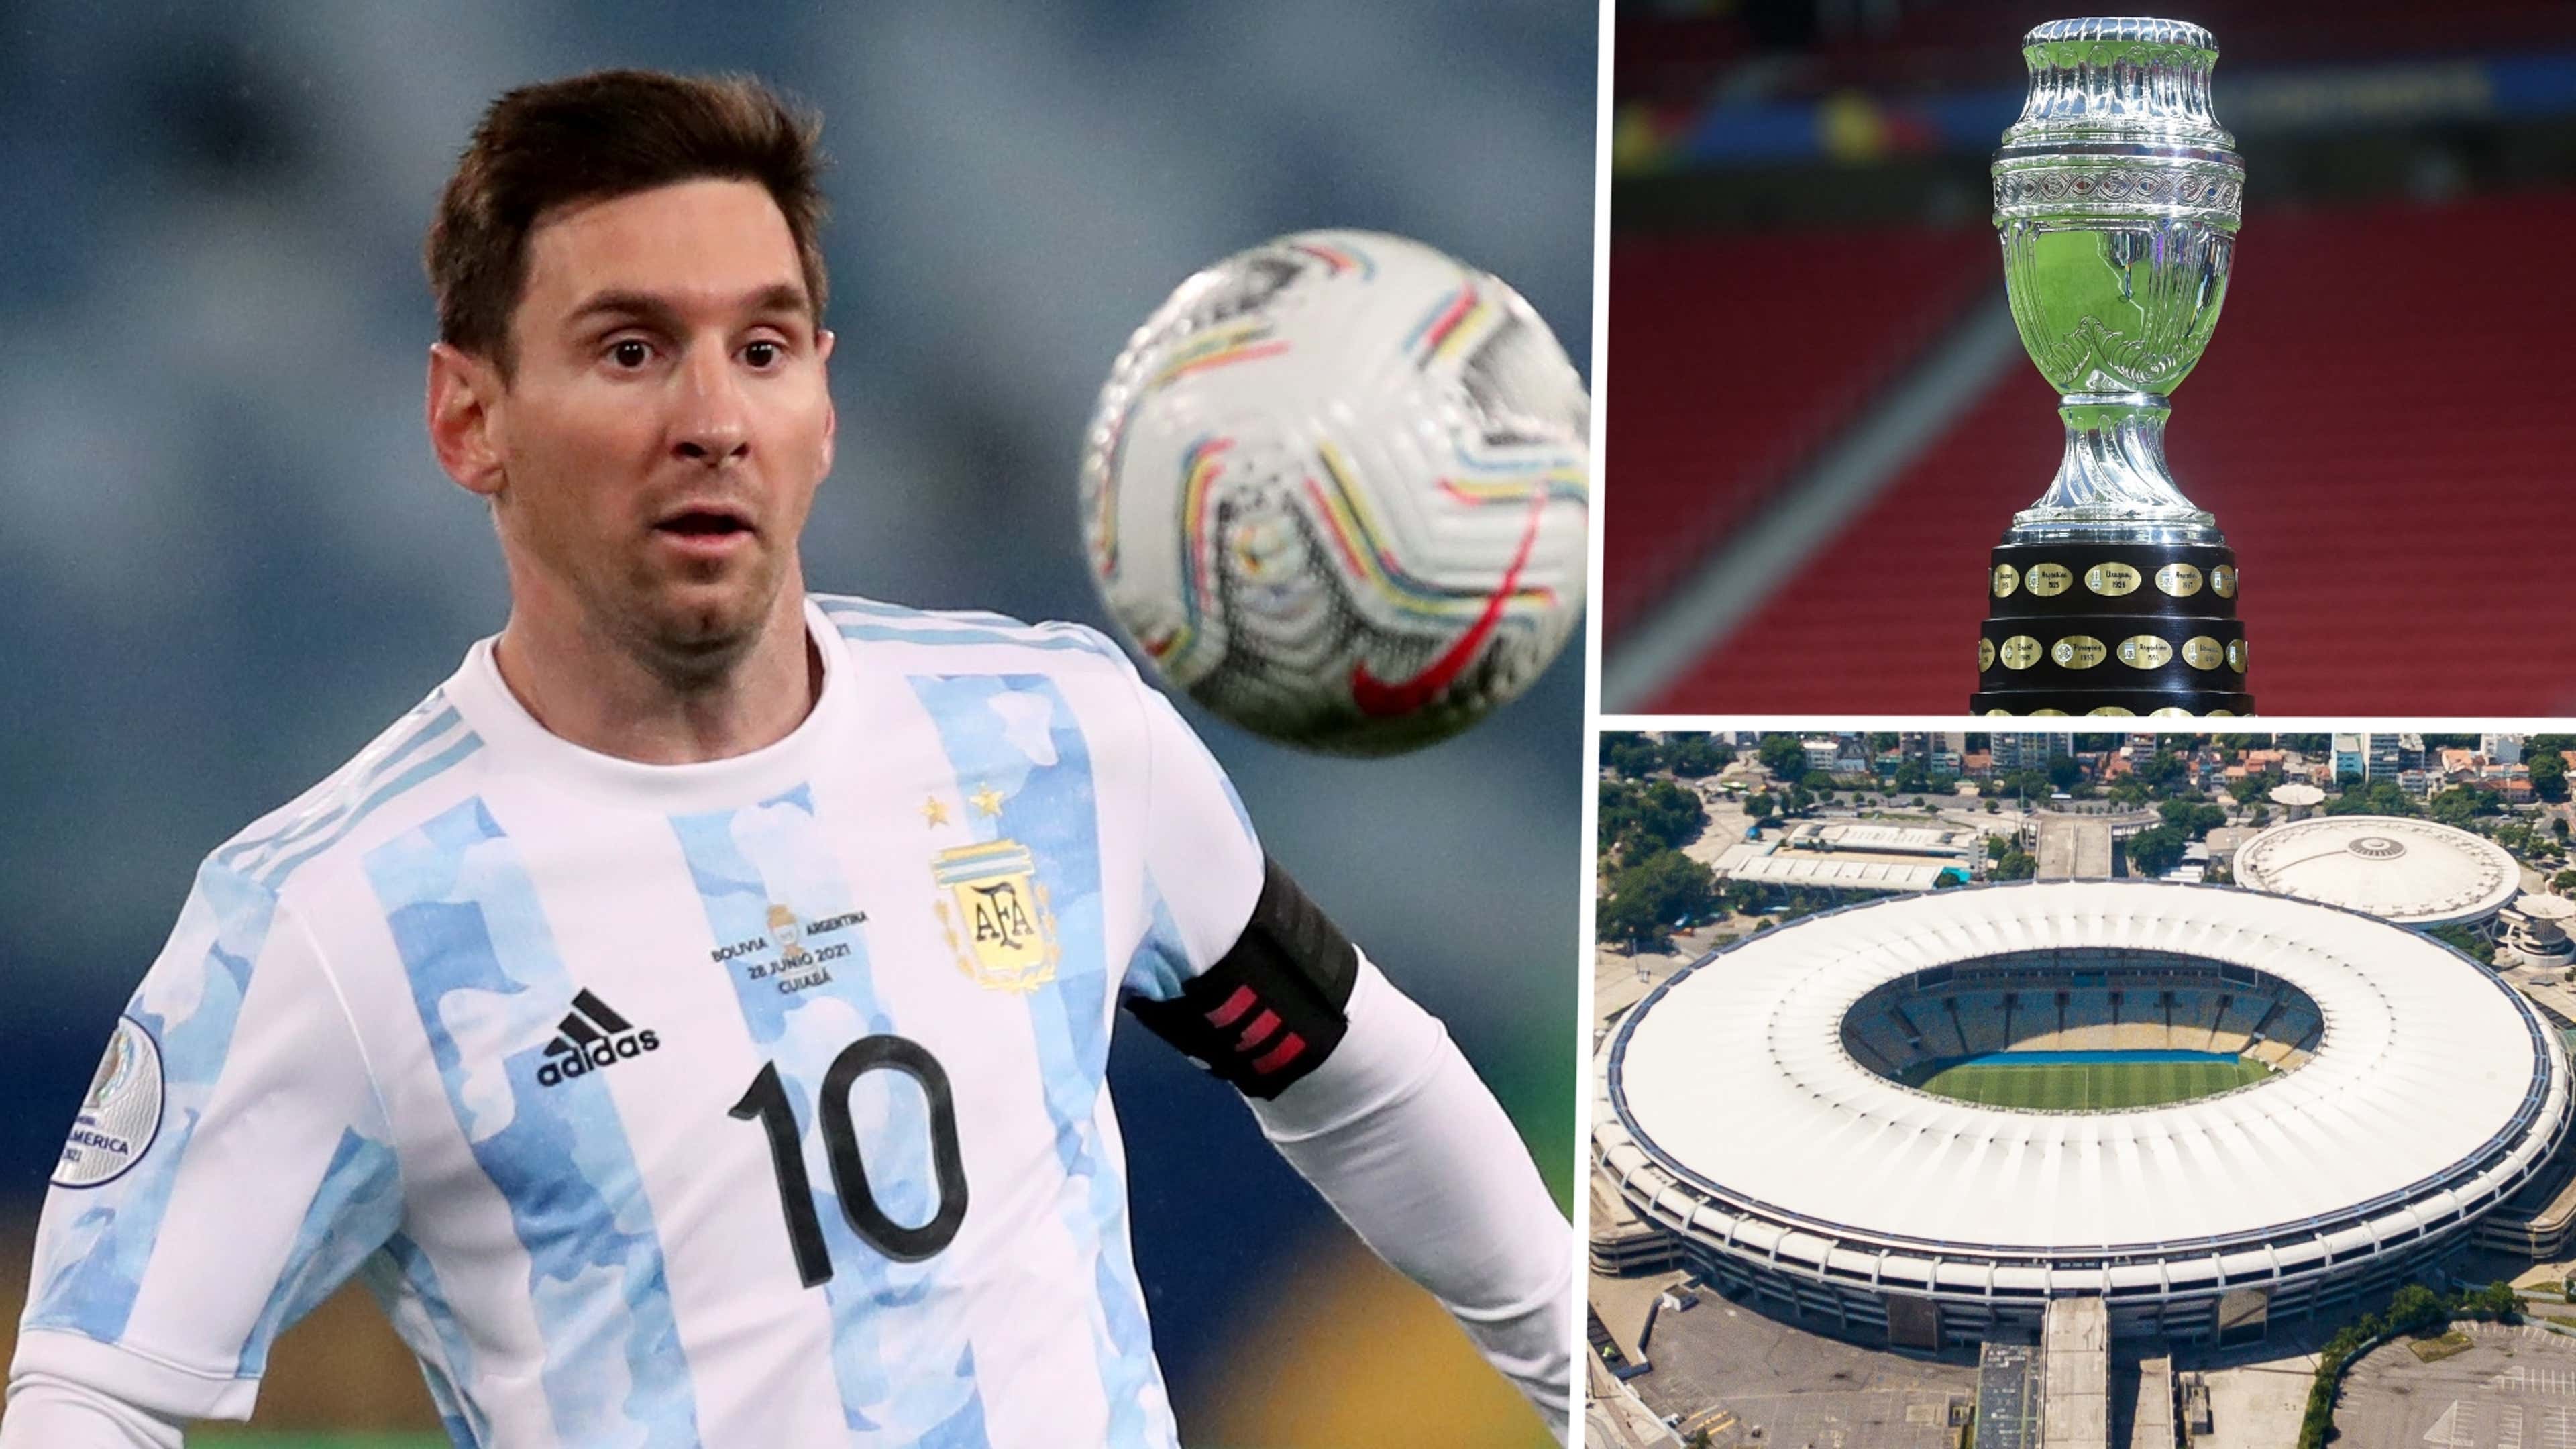 Copa America 2021 final: When it is, venue, TV channel, streaming